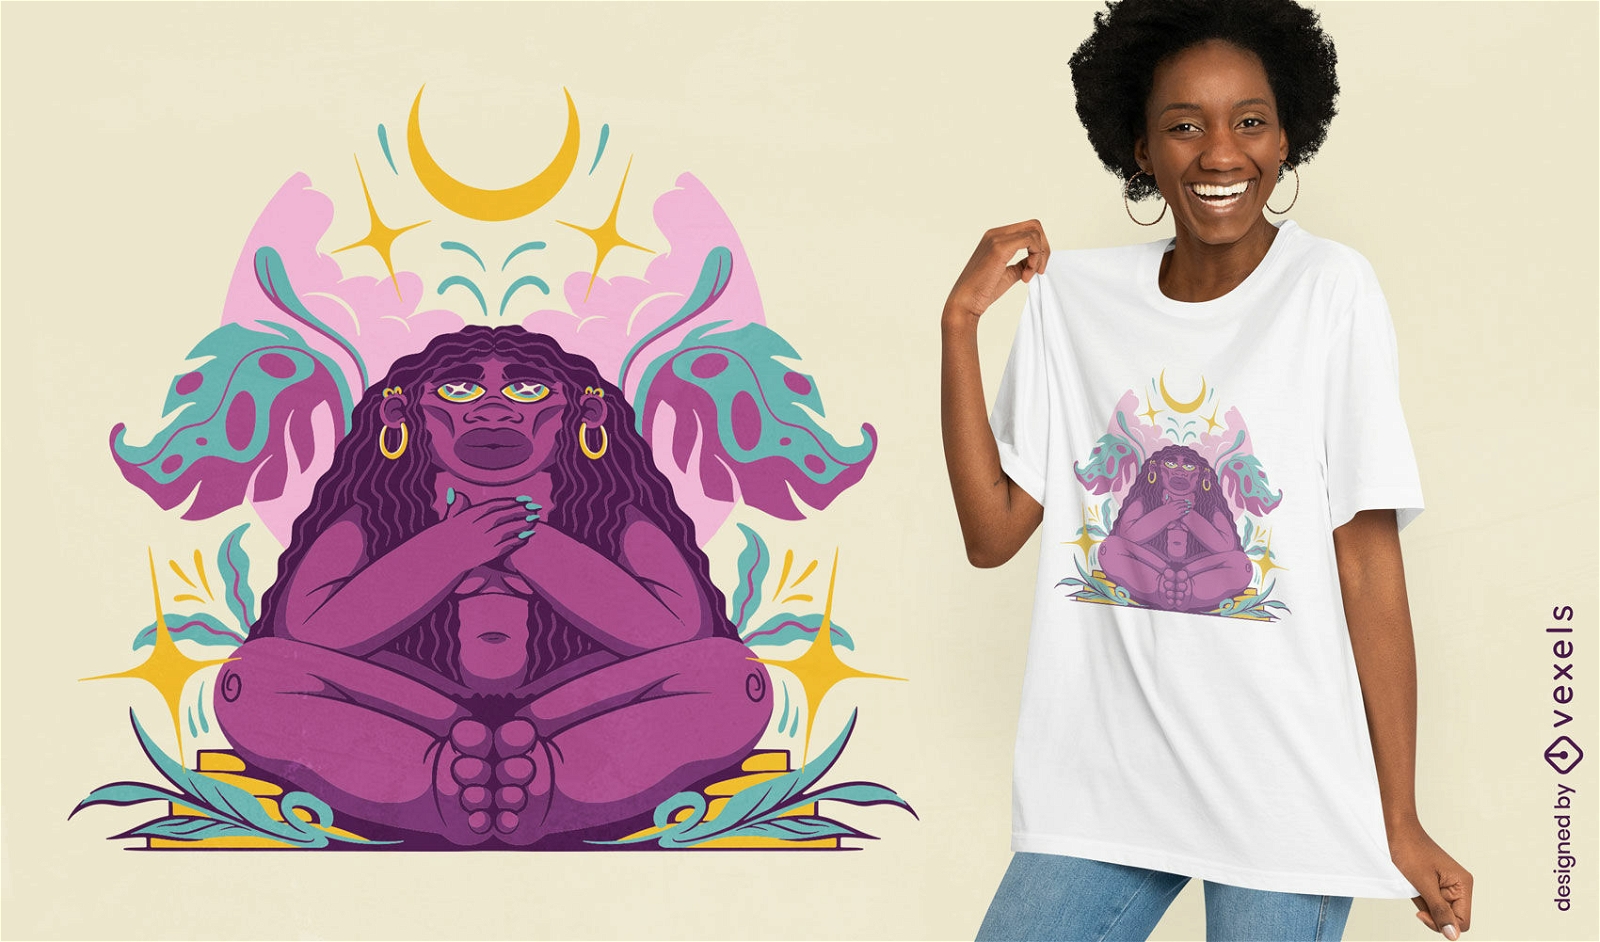 Mujer afro en el dise?o de camiseta de la naturaleza.